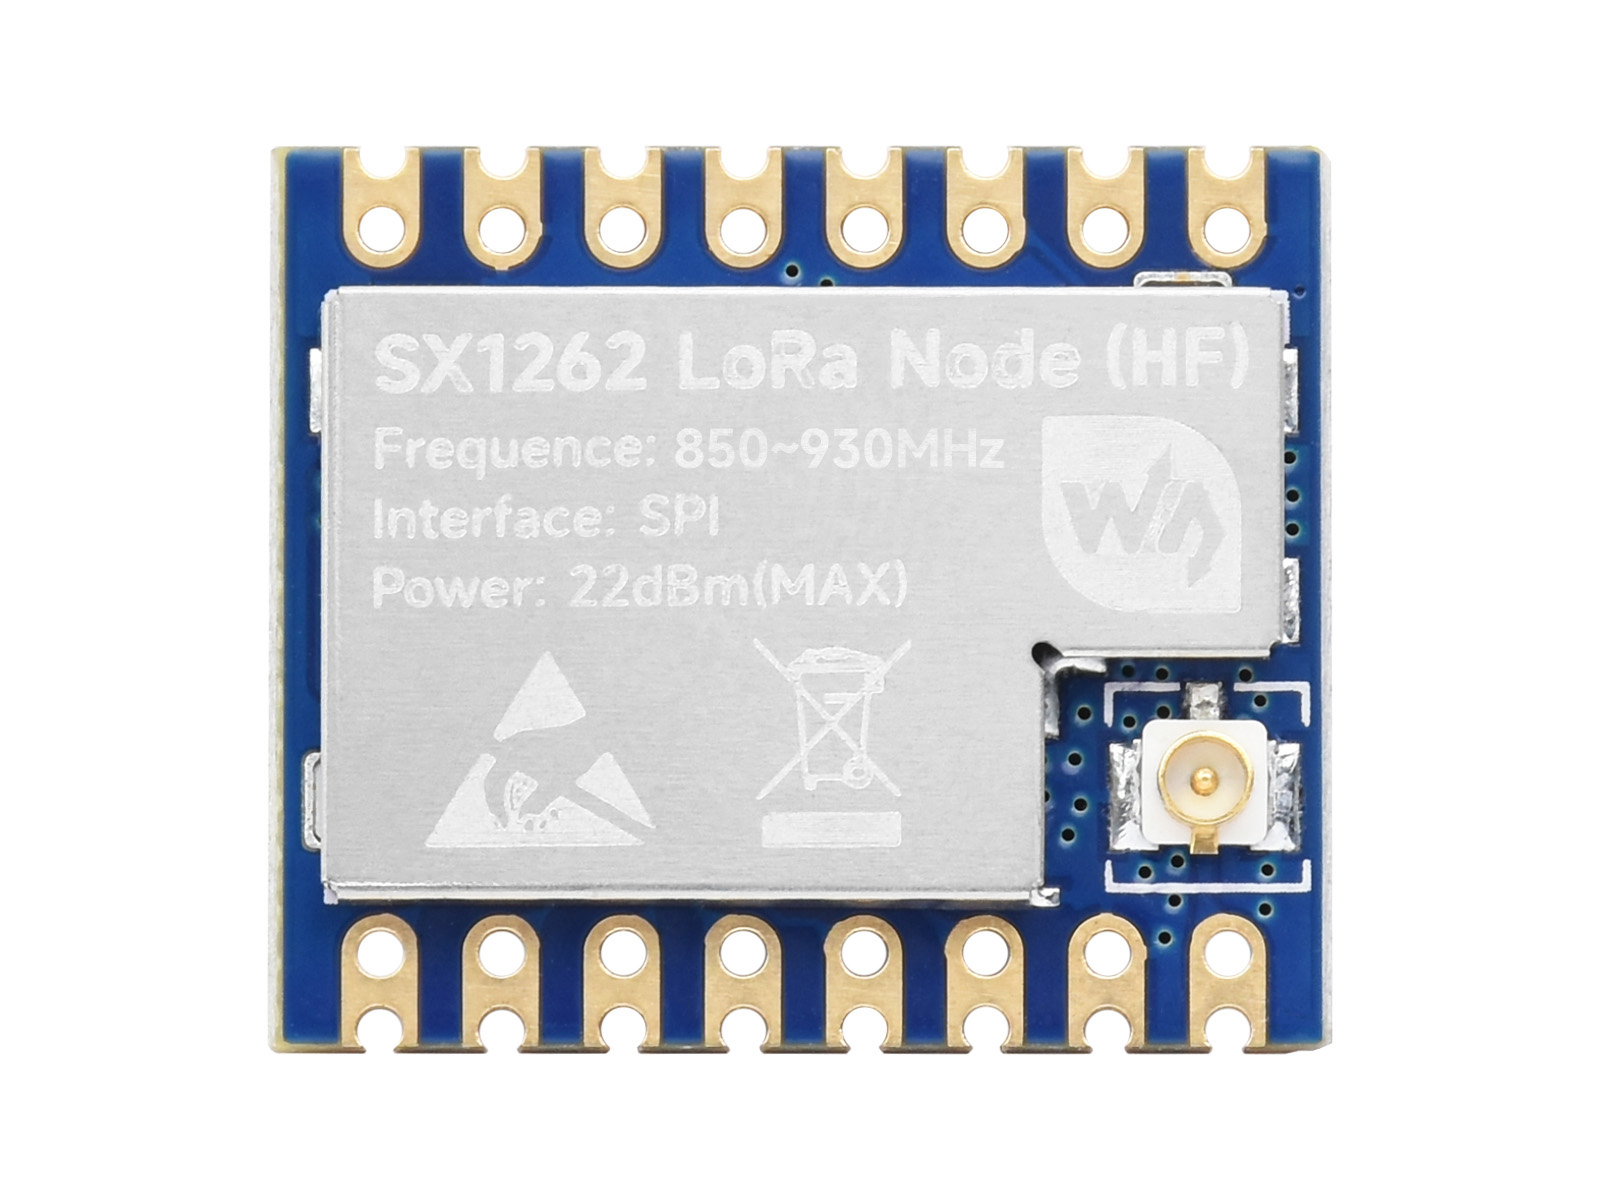 Core1262-HFLoRa模组 远距离通信 SX1262 抗干扰 LoRa 芯片模组 适用于 Sub-GHz HF 频段